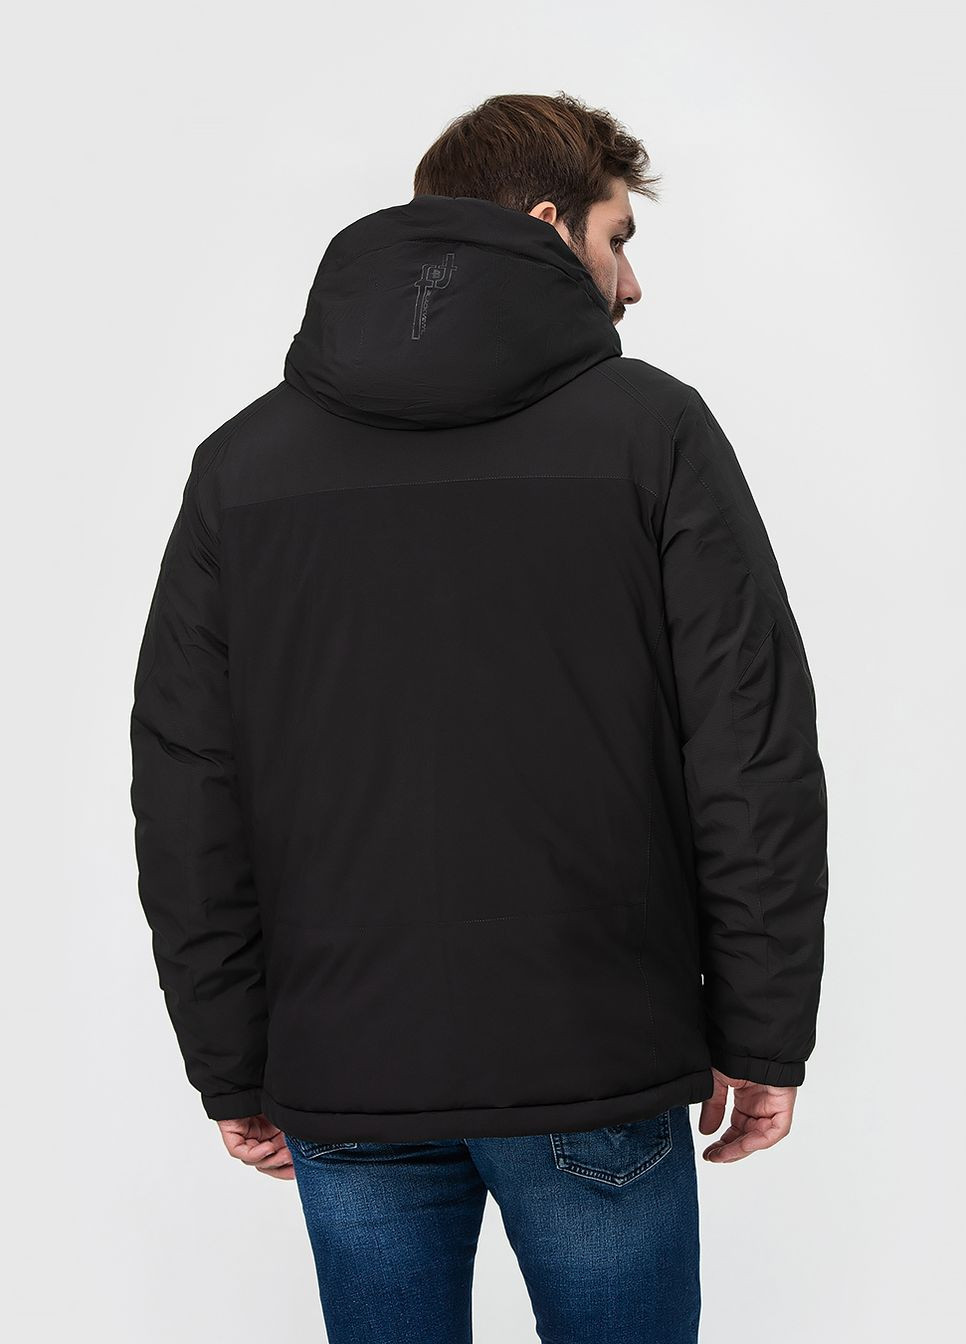 Черная летняя стильная мужская куртка модель Black Vinyl 23-1713